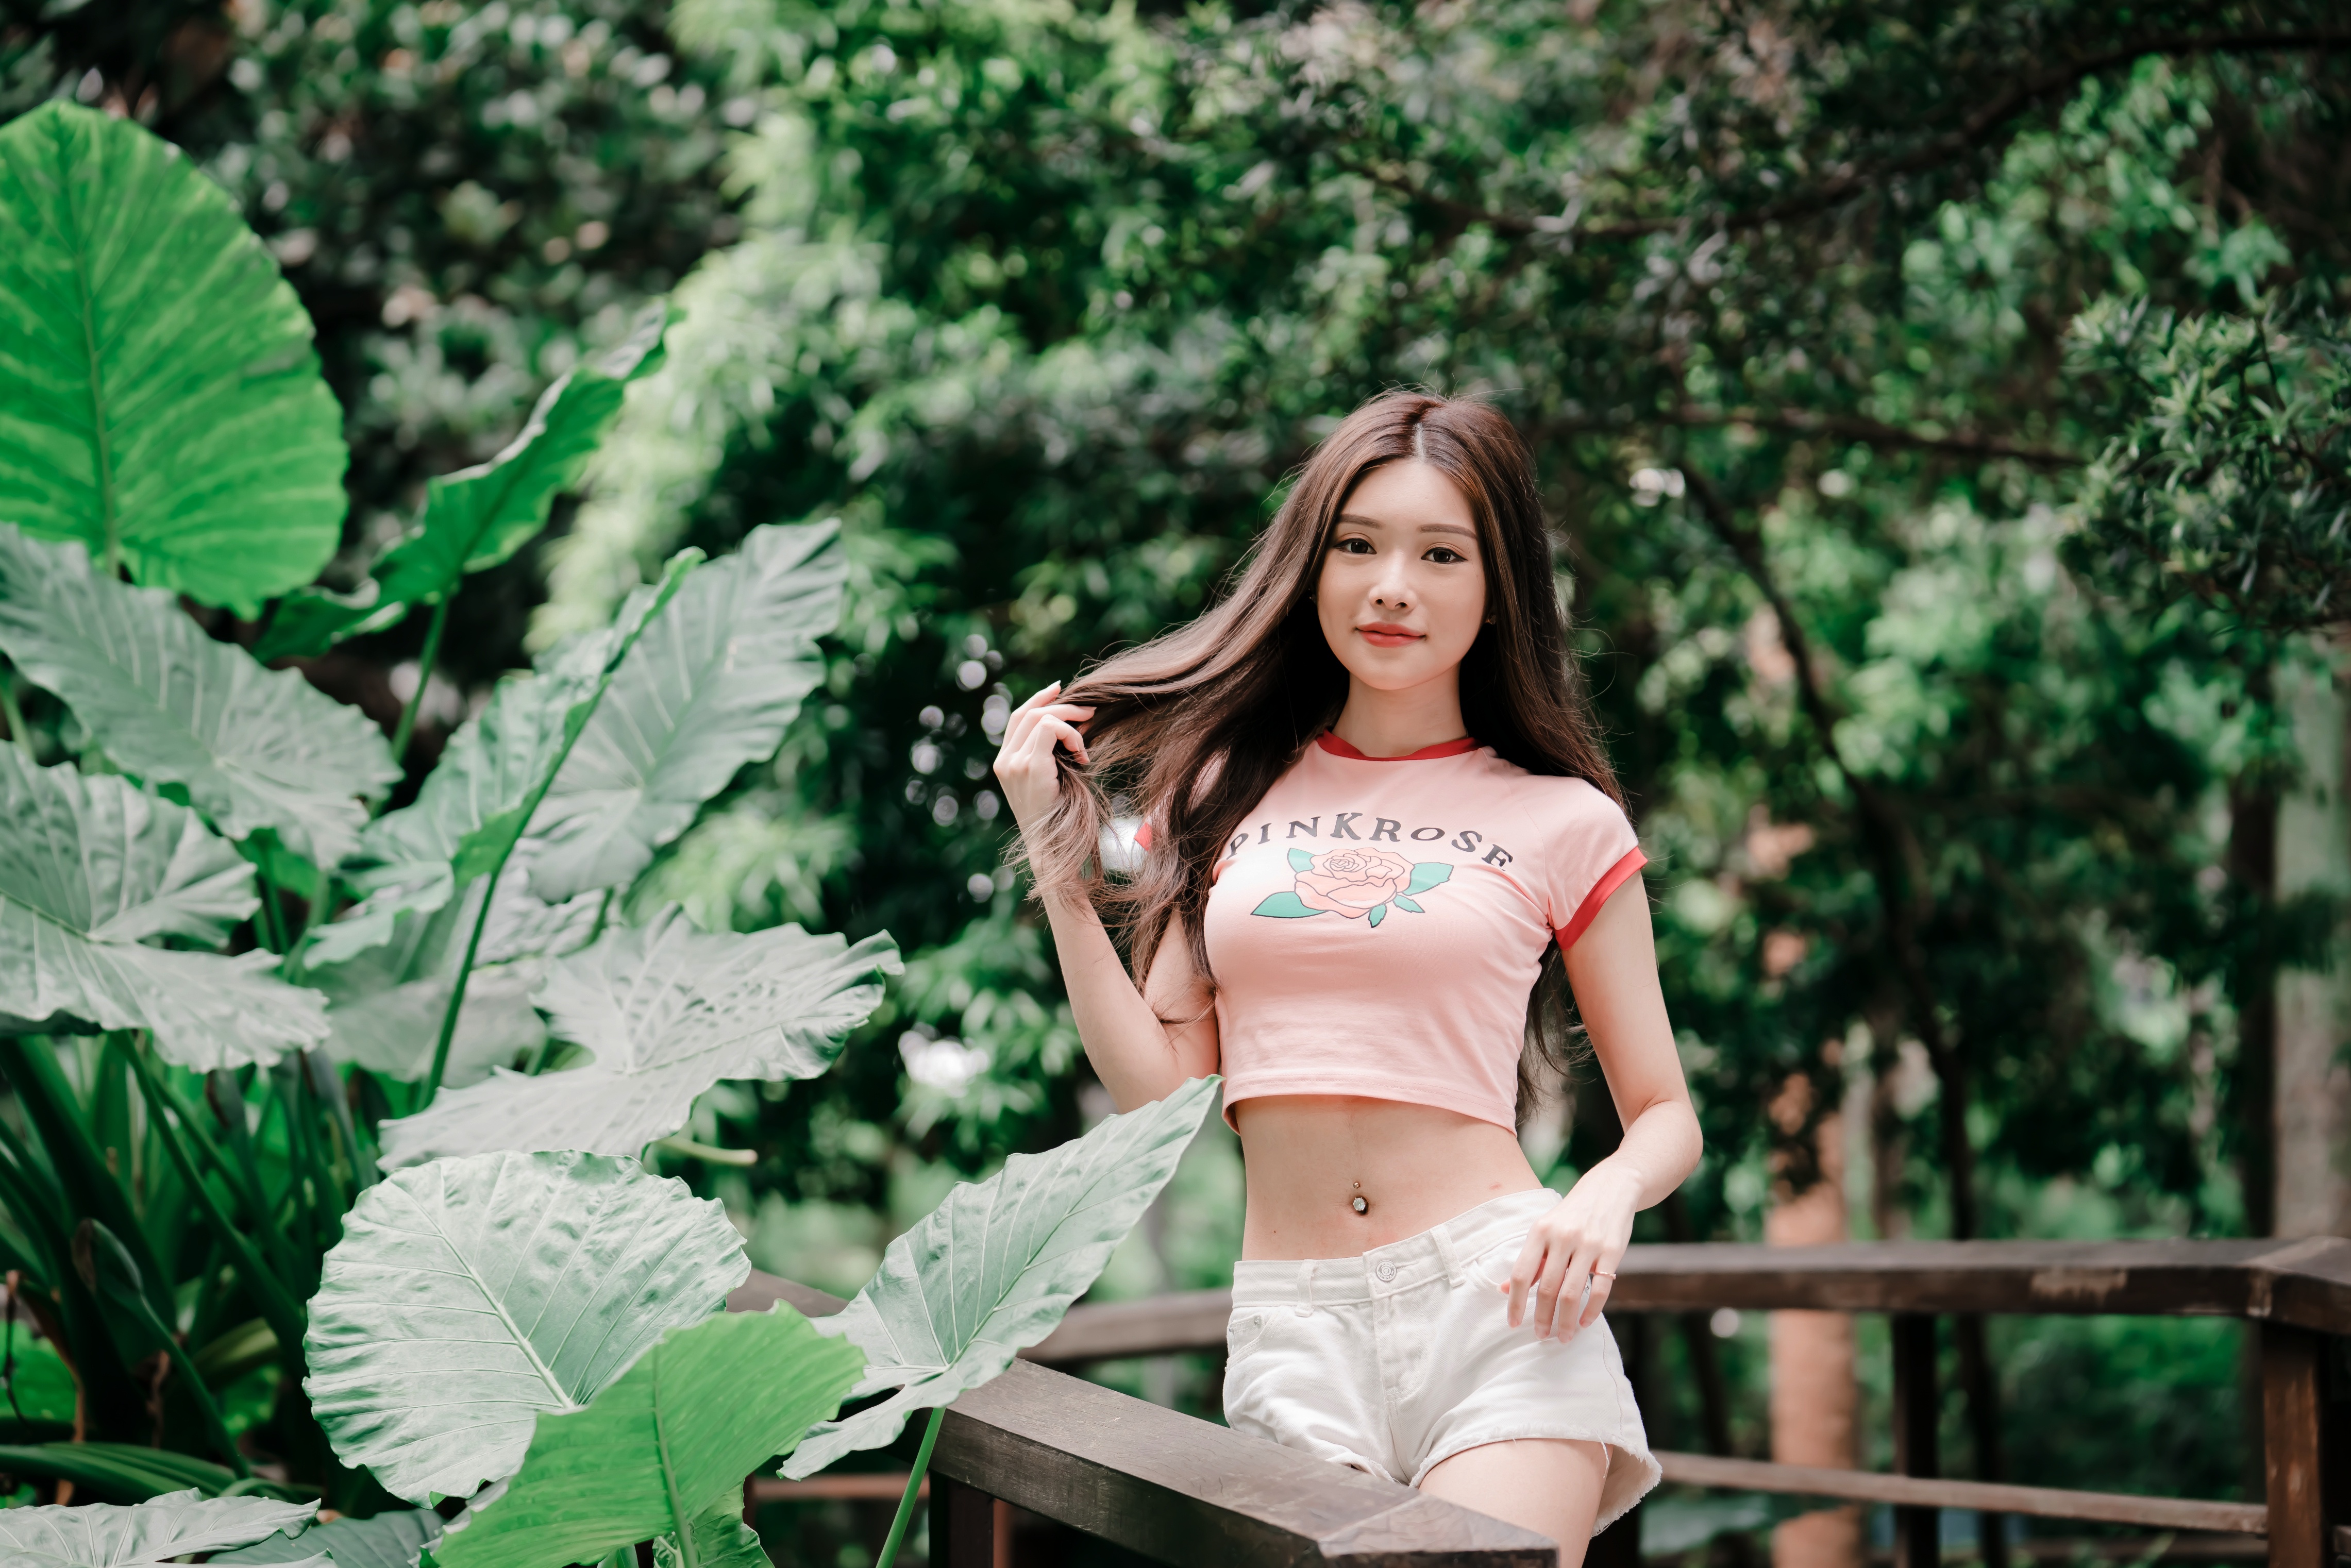 People 4562x3043 Asian women model long hair brunette pink tops shorts railing depth of field trees plants pierced navel women outdoors